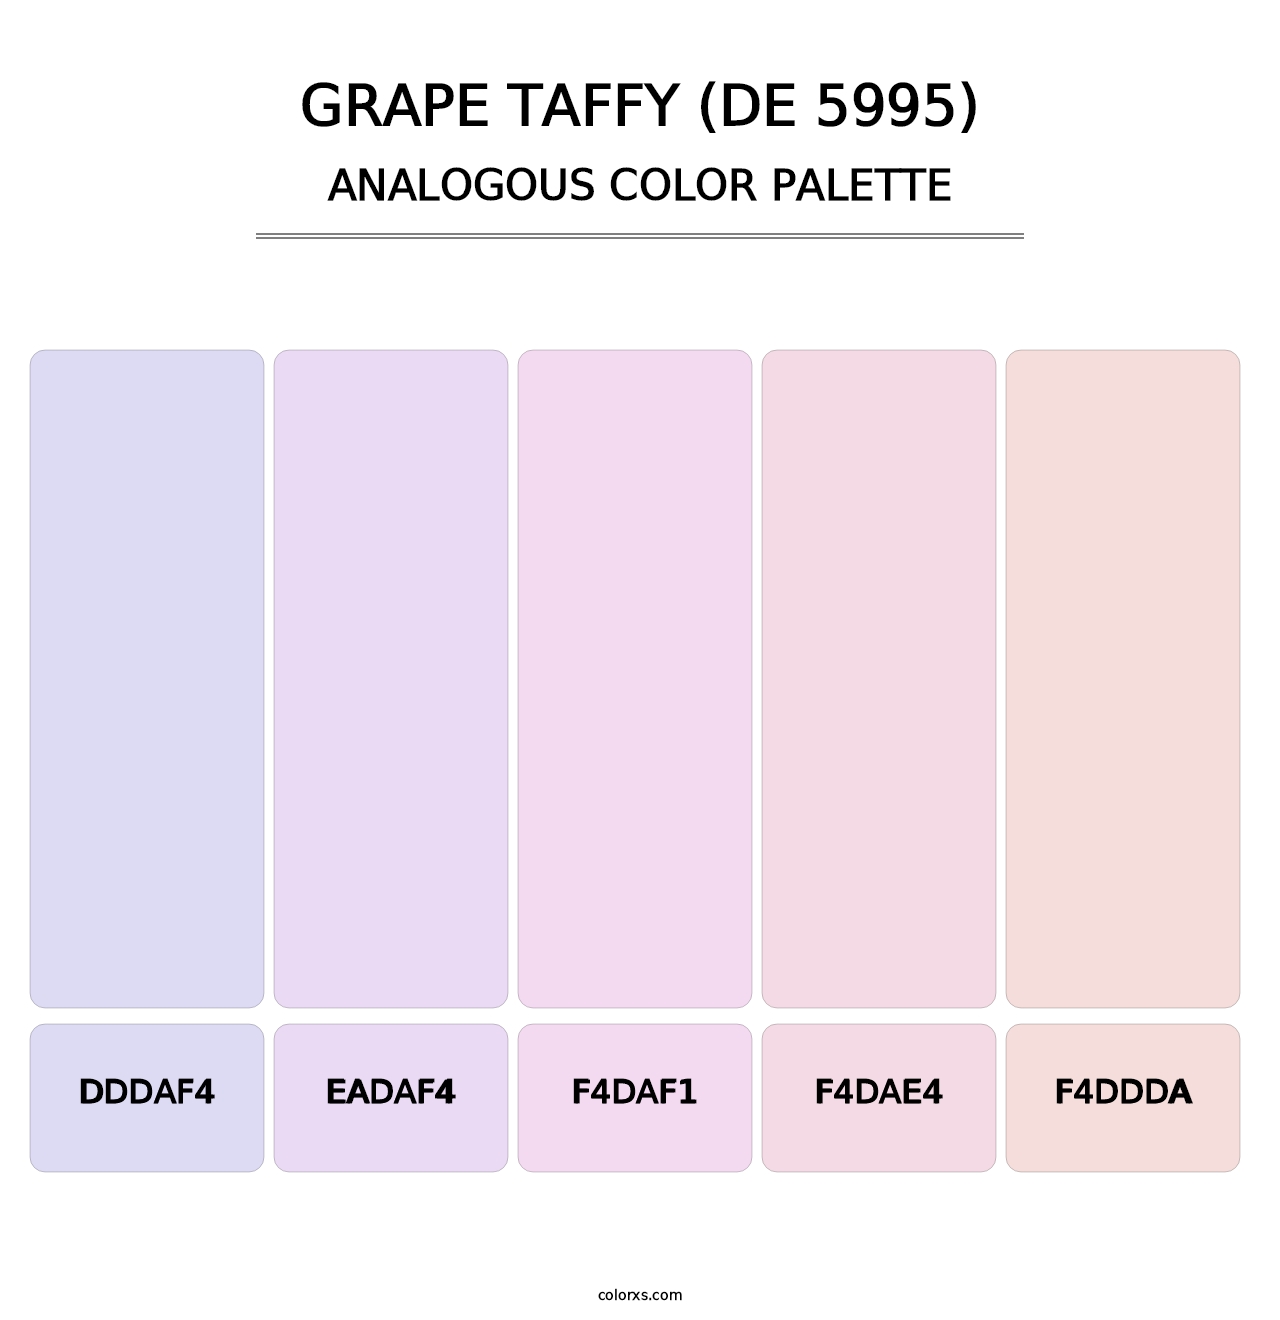 Grape Taffy (DE 5995) - Analogous Color Palette